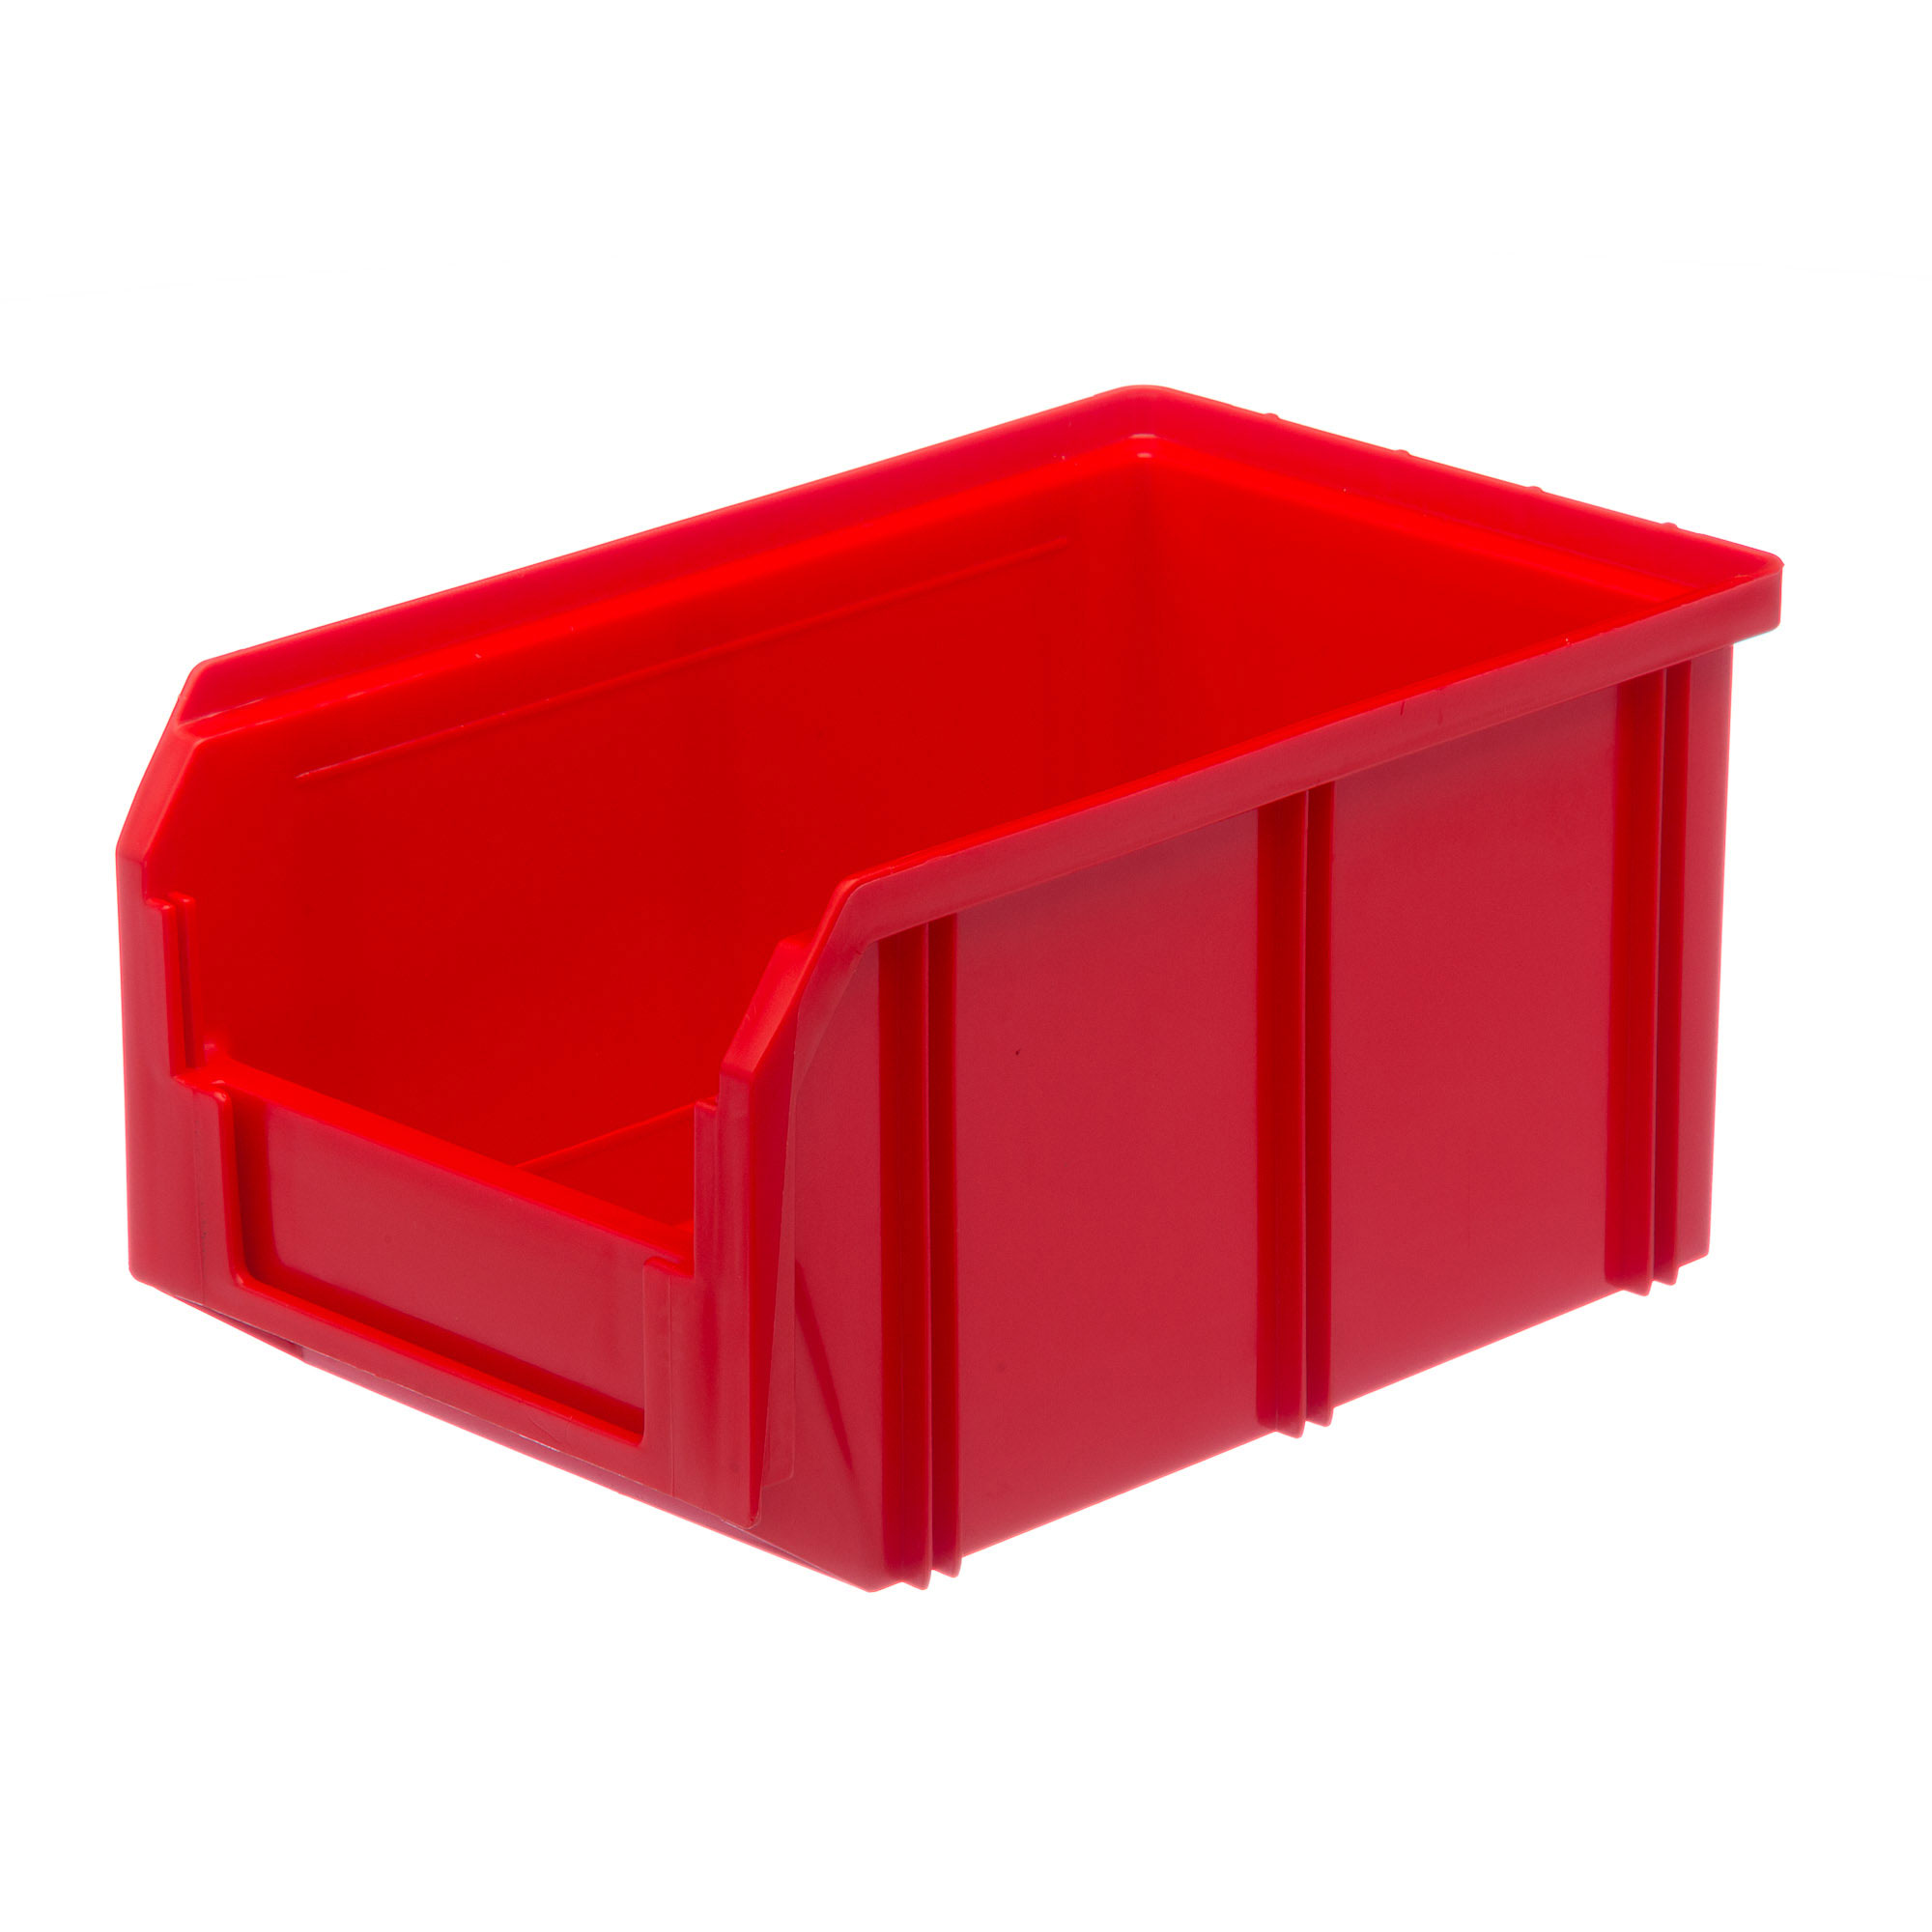 Пластиковый ящик Стелла-техник V-2-красный 234х149х120мм, 3,8 литра сыворотка для увеличения объема ресниц widelash прозрачный